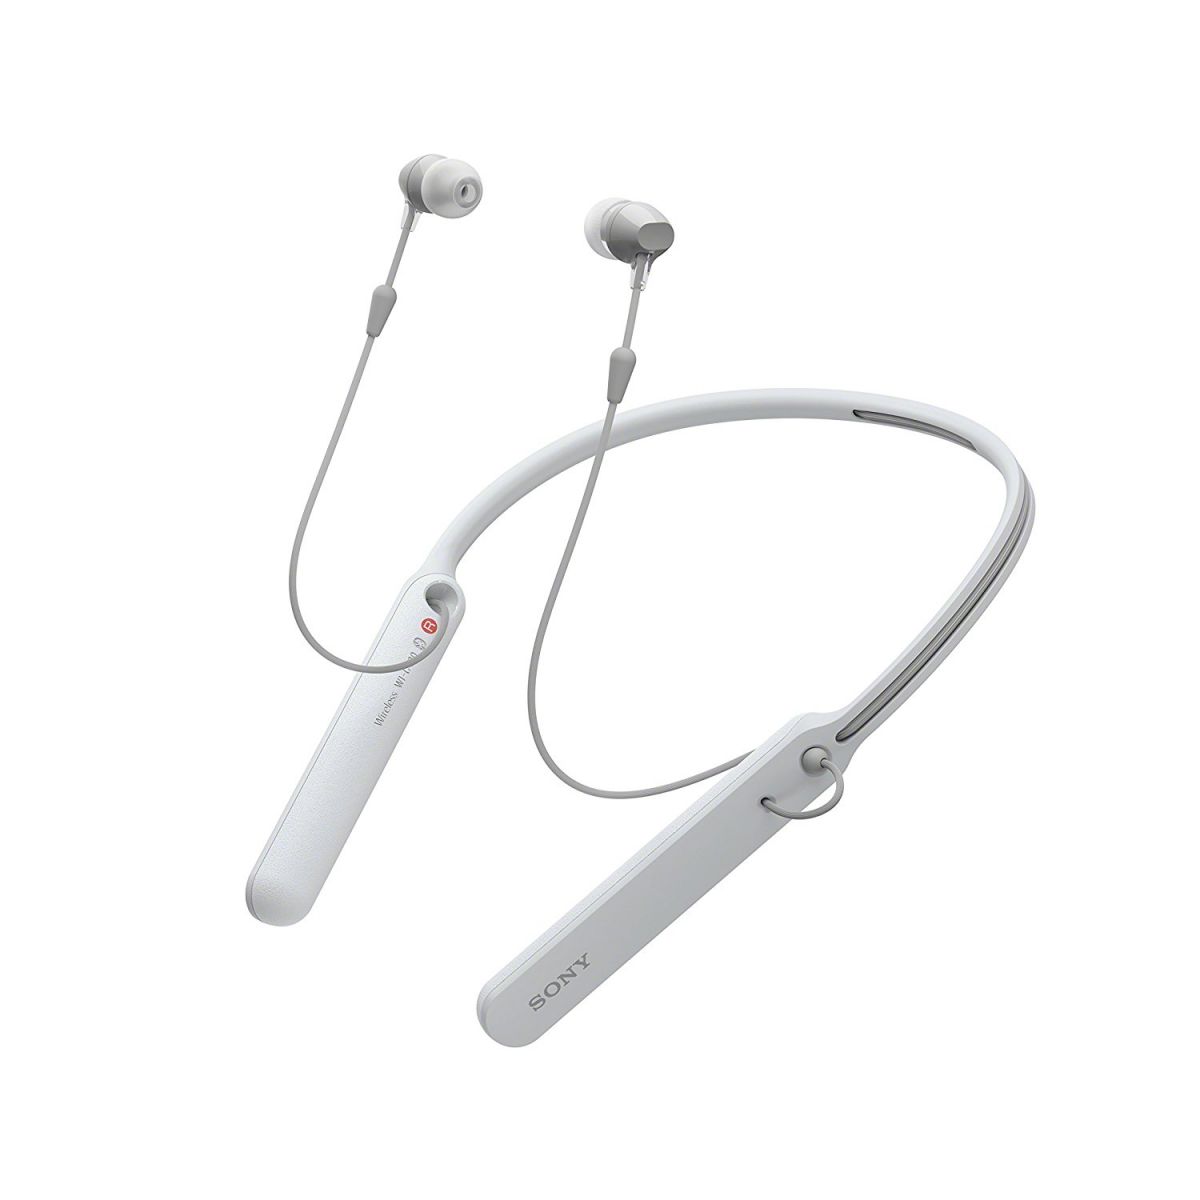 Audioshop.com.vn cung cấp tai nghe Sony WI C400 chính hãng